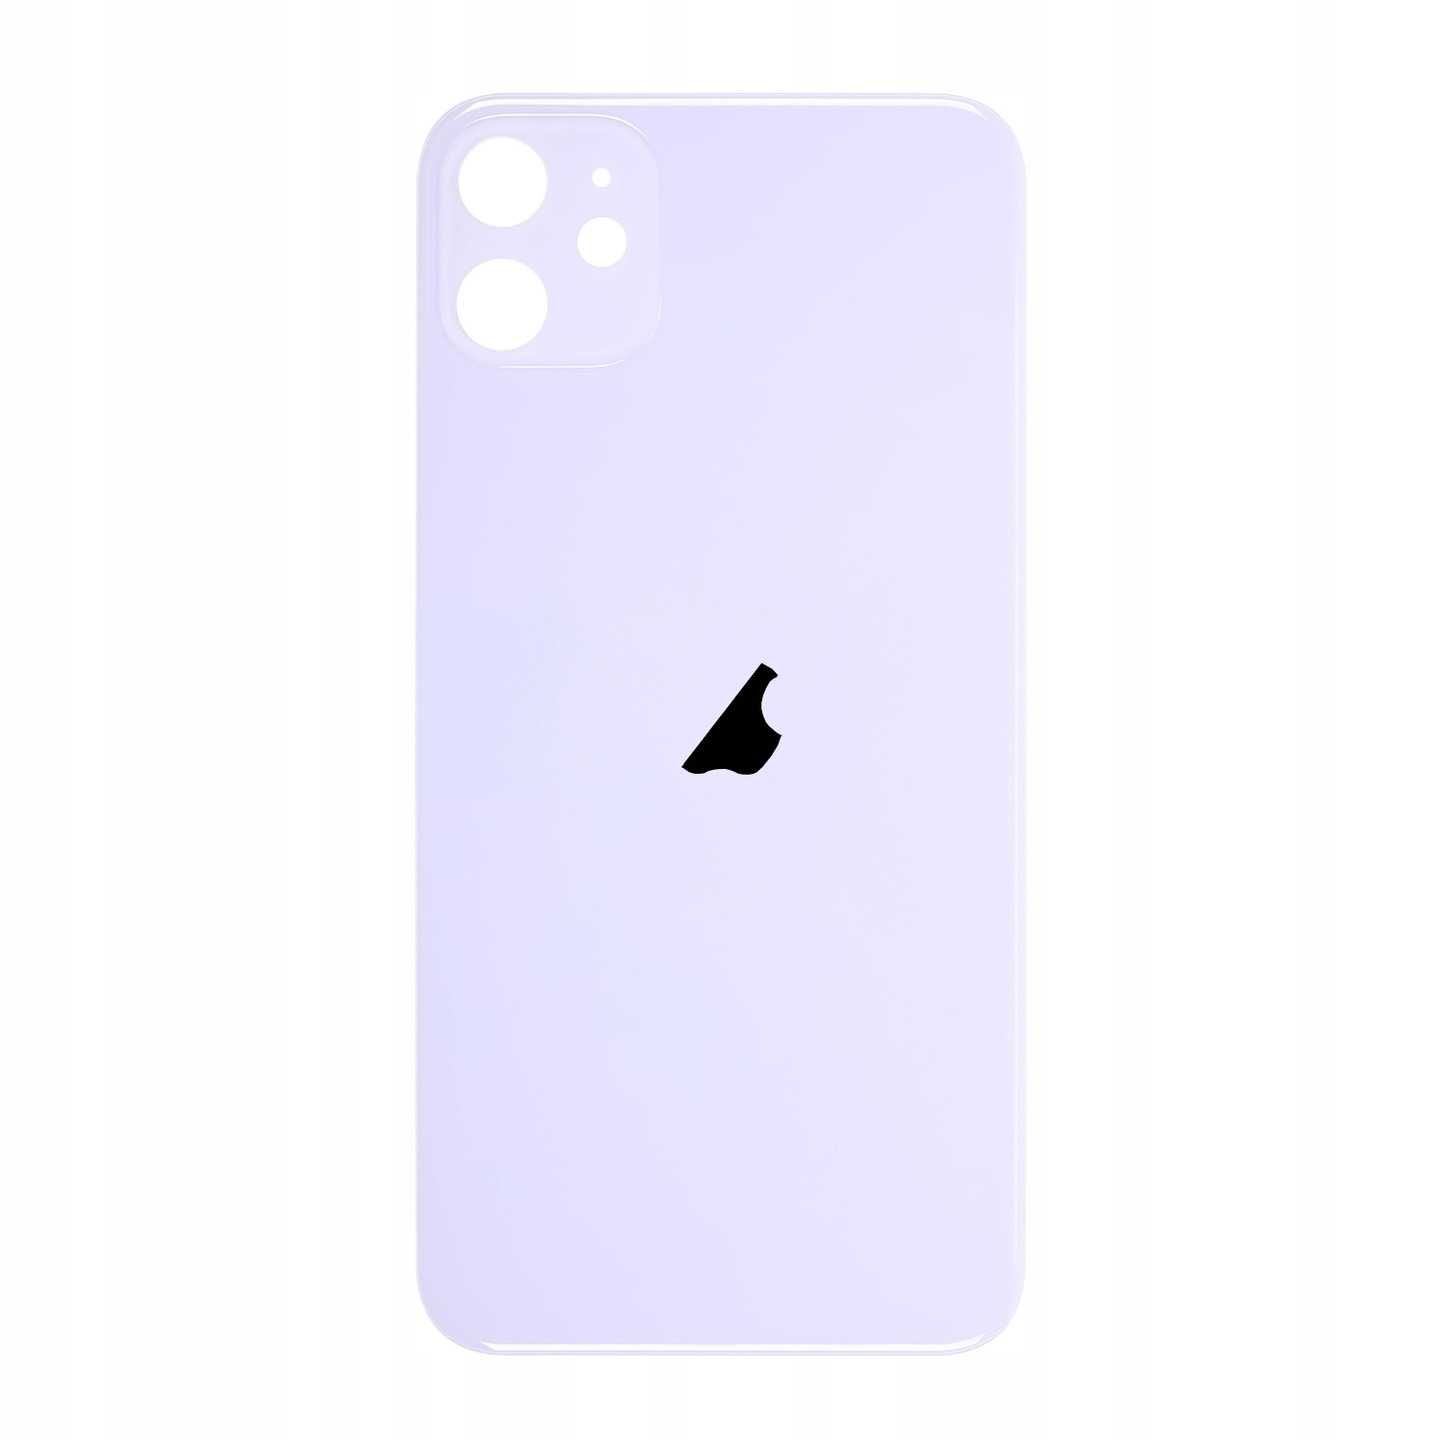 PANEL TYŁ Tylny Szkło Szyba Panele Dla iPhone 11 Purple